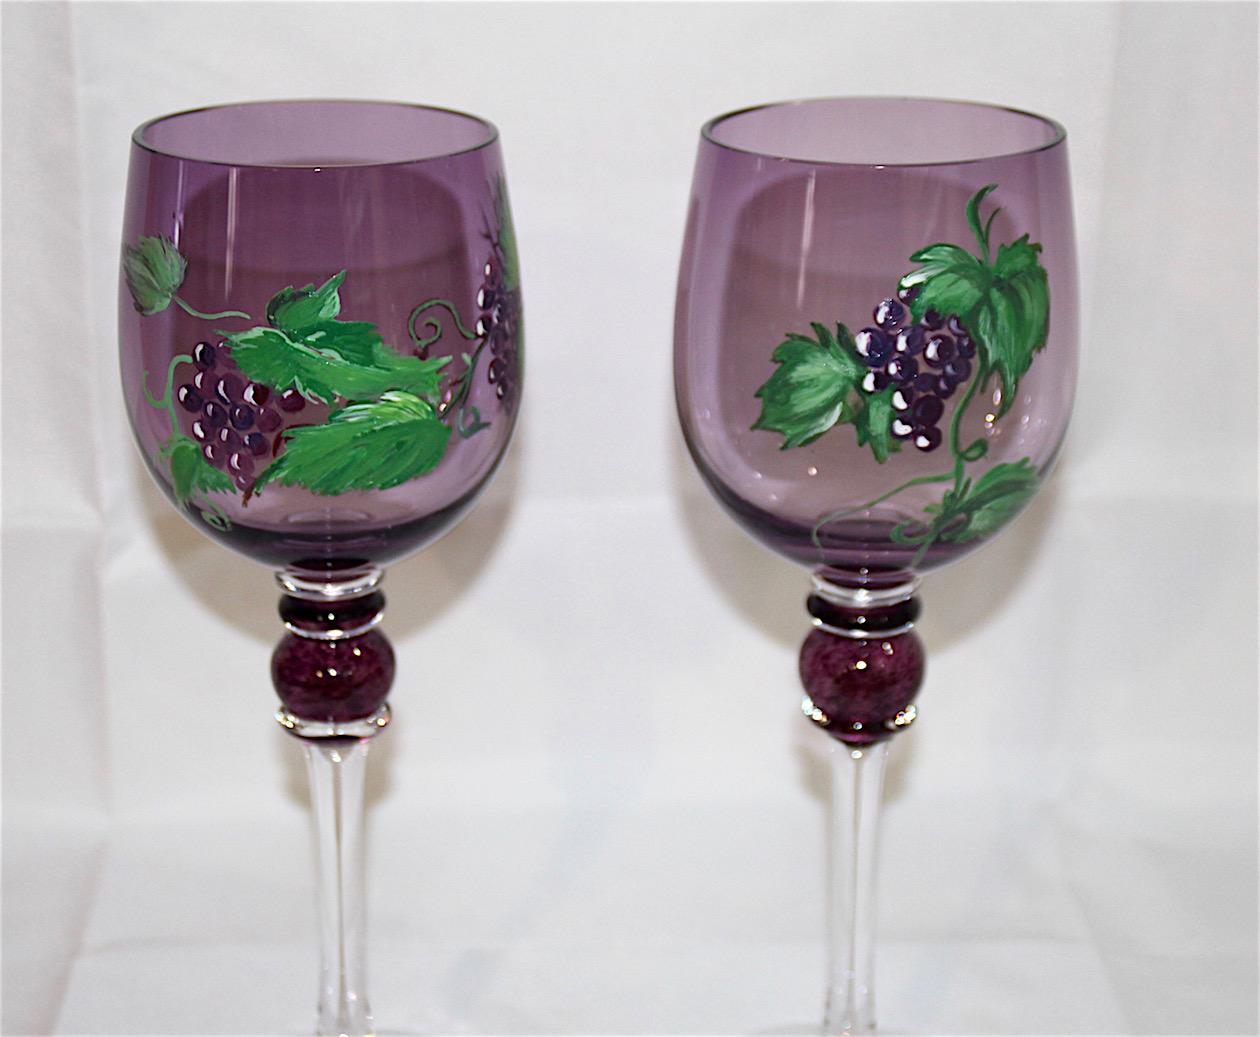 Les verres à vin soufflés et peints à la main proviennent d'une petite verrerie de Šumava en Bohème. Verre à boire avec une touche de l'époque baroque. Les verriers conçoivent leurs propres formes et couleurs. Le prix est pour une seule pièce. Il